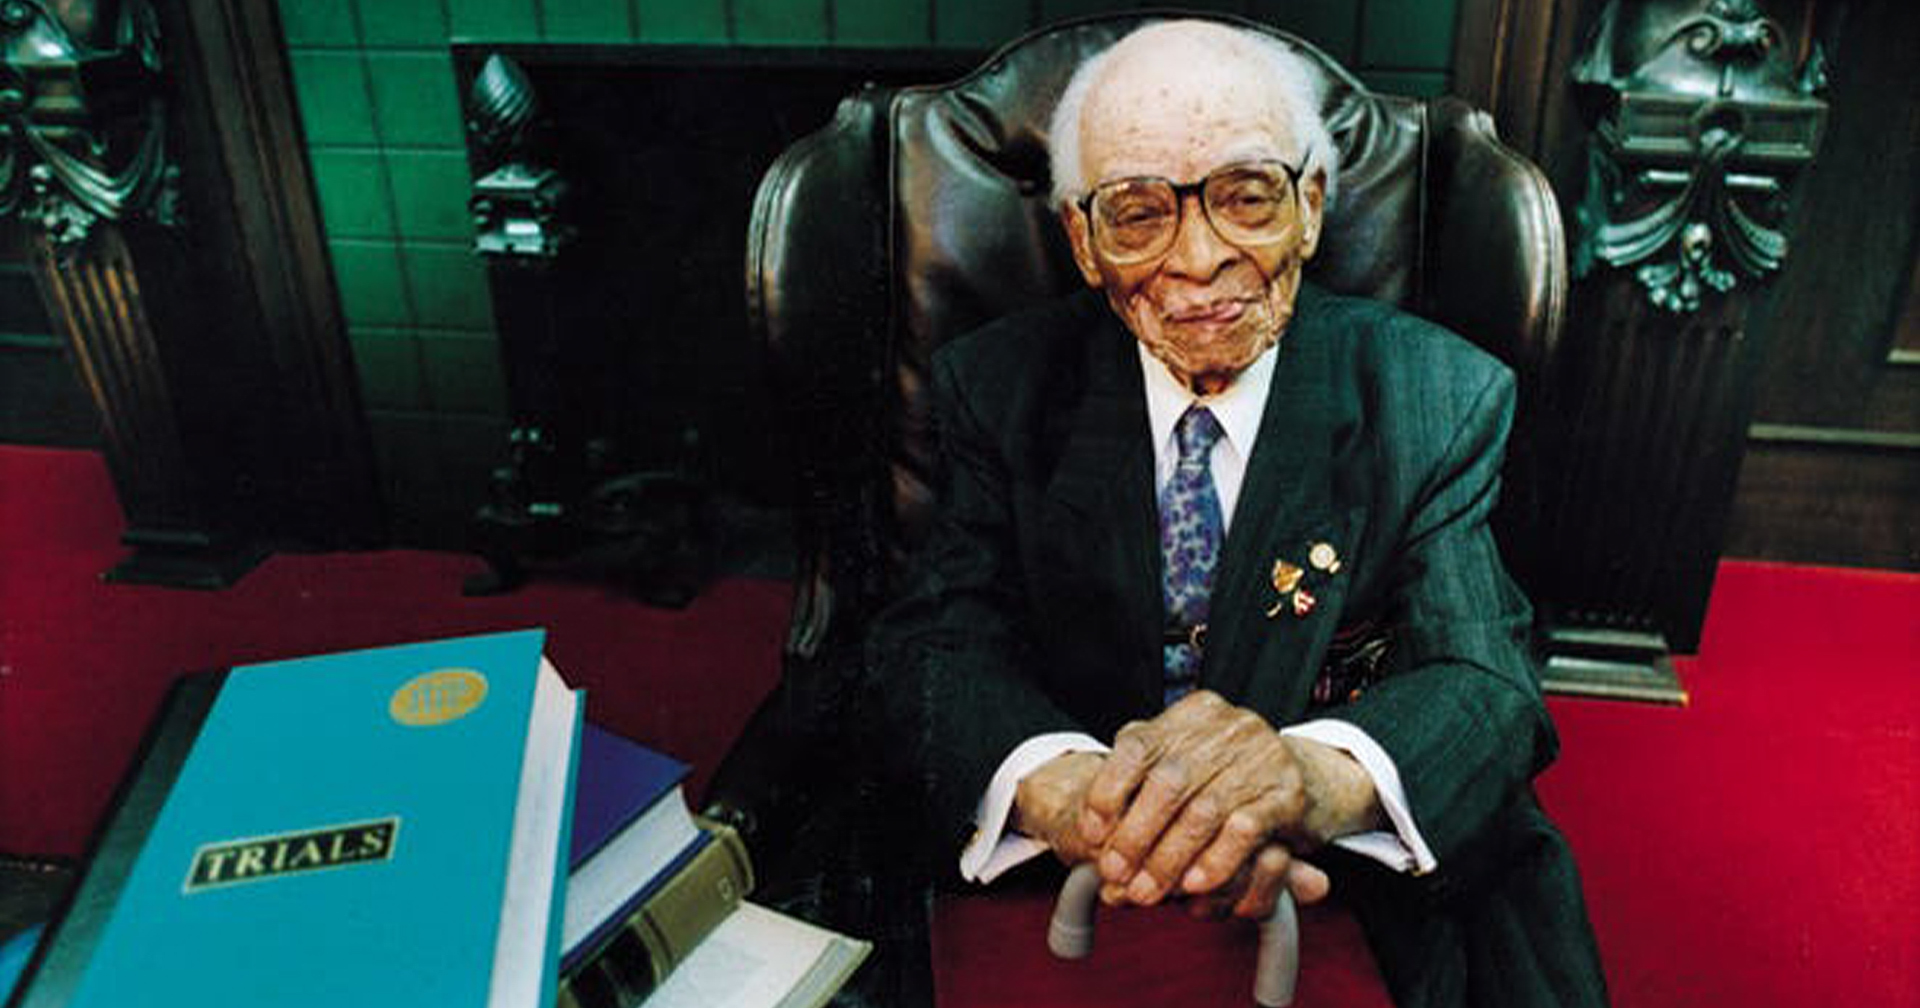 ไม่มีใครแก่เกินเรียน คุณปู่เรียนจบปริญญา 11 ใบ และเป็นทนายฝึกหัดจนอายุ 106 ปี